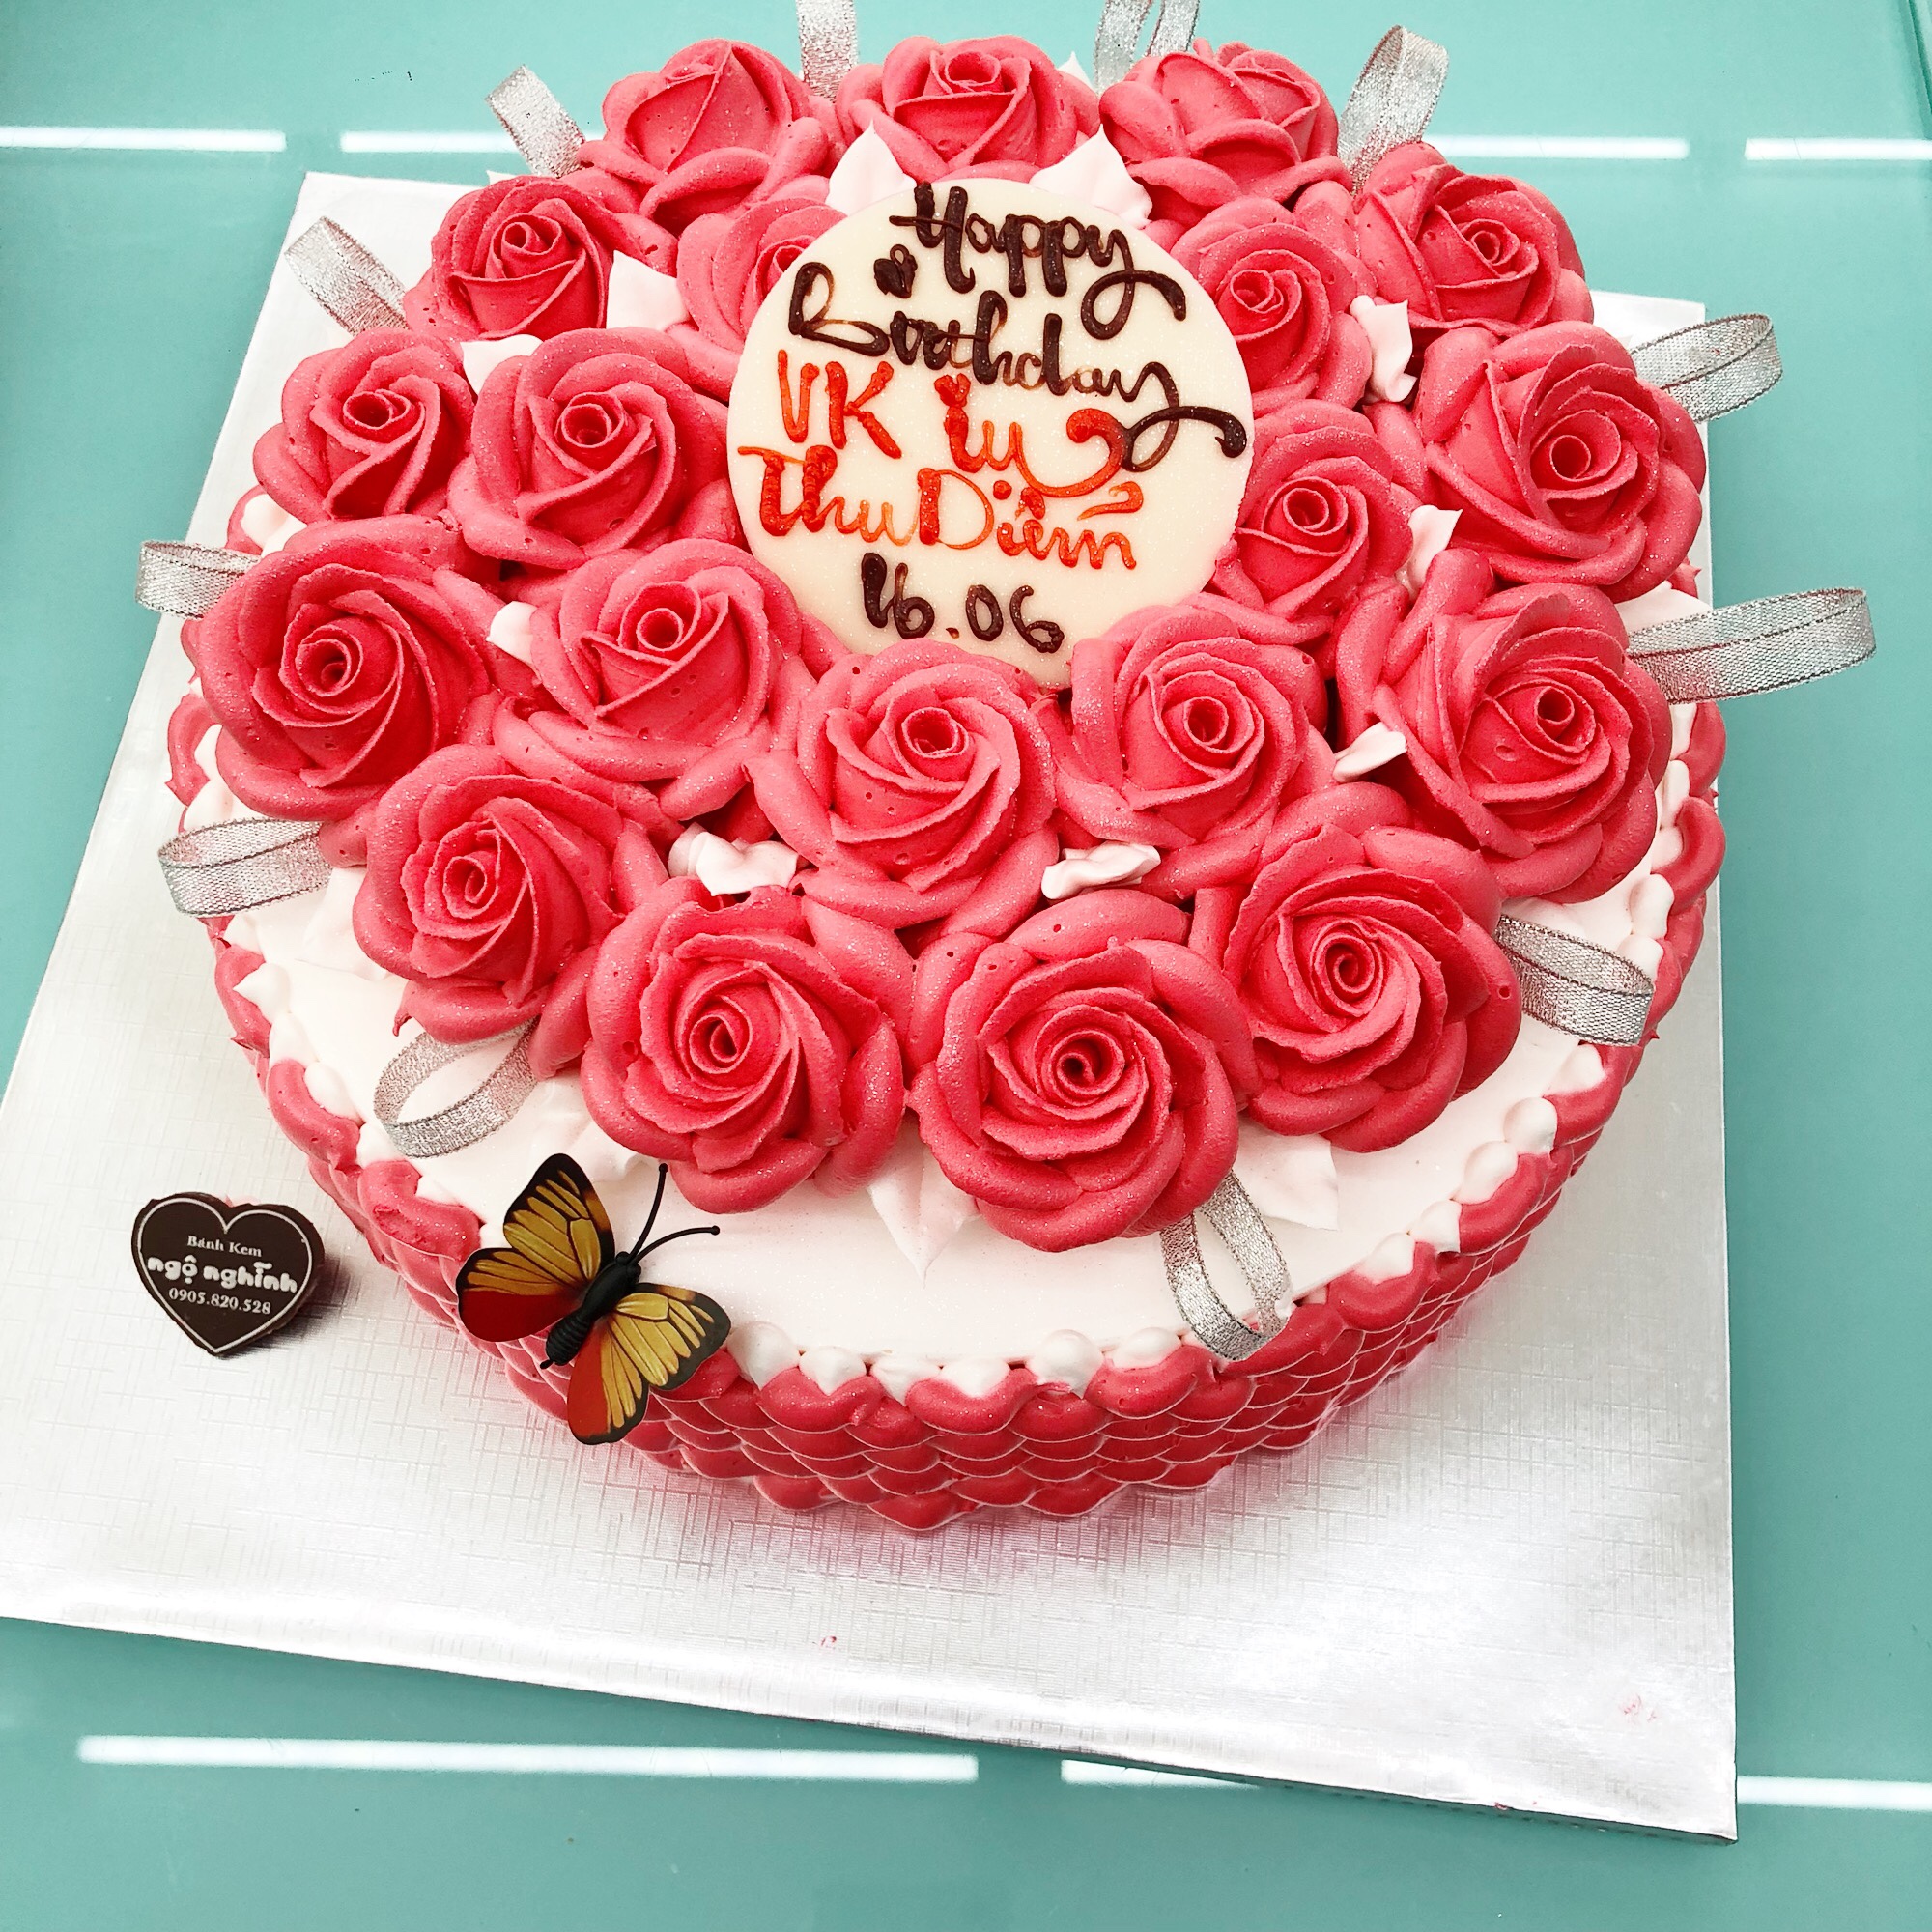 Bánh sinh nhật phủ socola đỏ - nơi gửi trao yêu thương